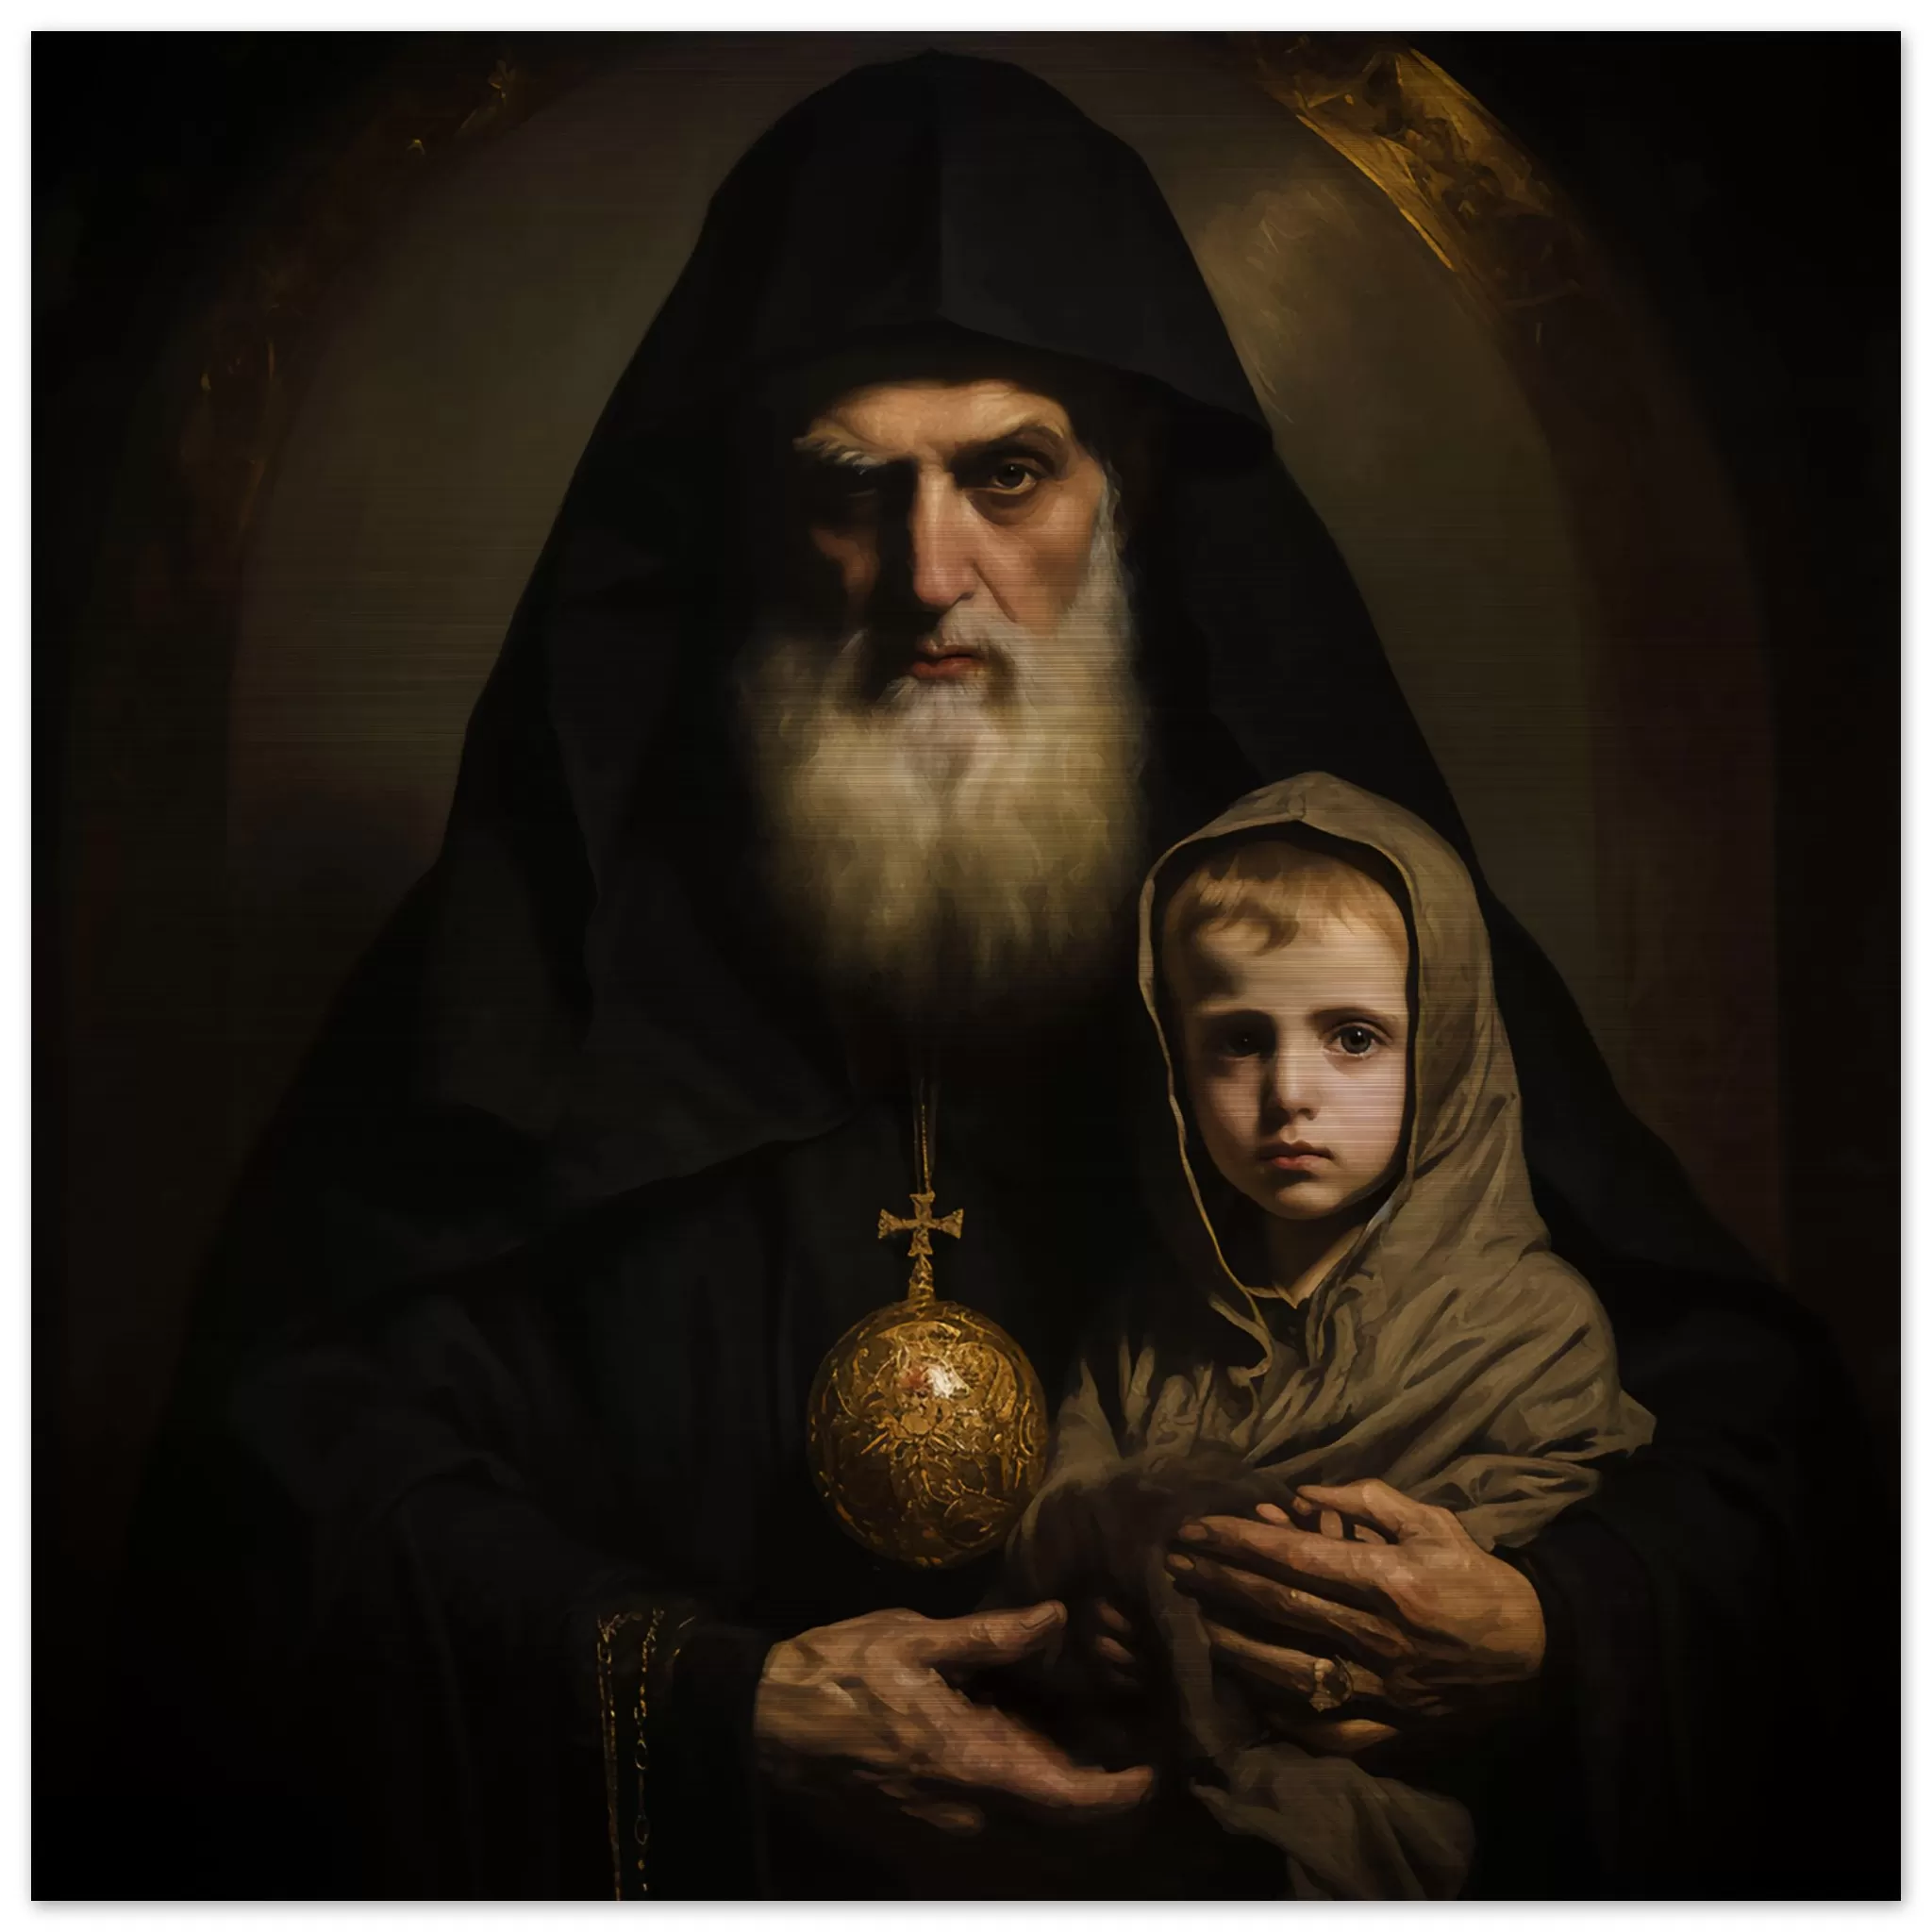 St Sharbel Makhlouf Maronite Monk with Divine Child Icon Brushed Aluminum Brushed Aluminum Icons Rosary.Team